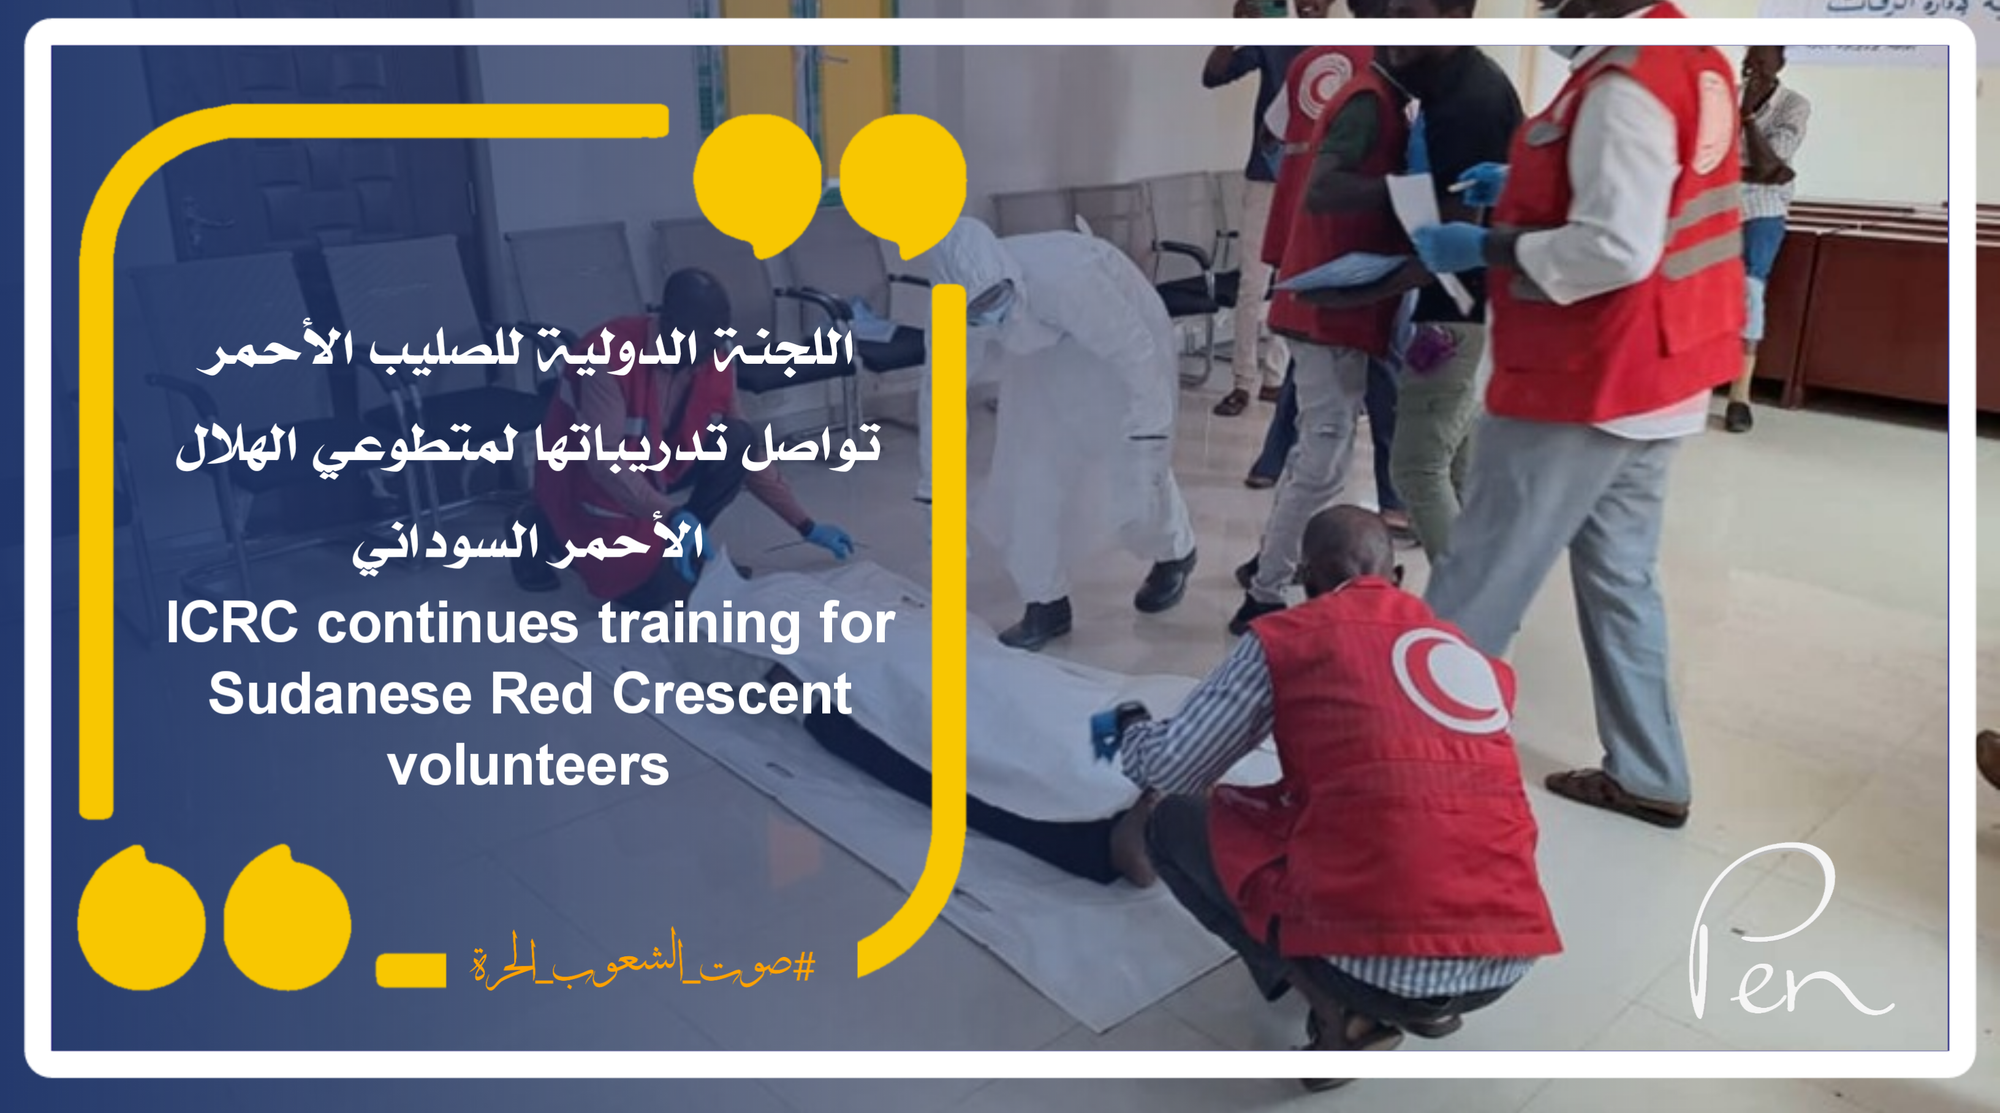 اللجنة الدولية للصليب الأحمر تواصل تدريباتها لمتطوعي الهلال الأحمر السوداني